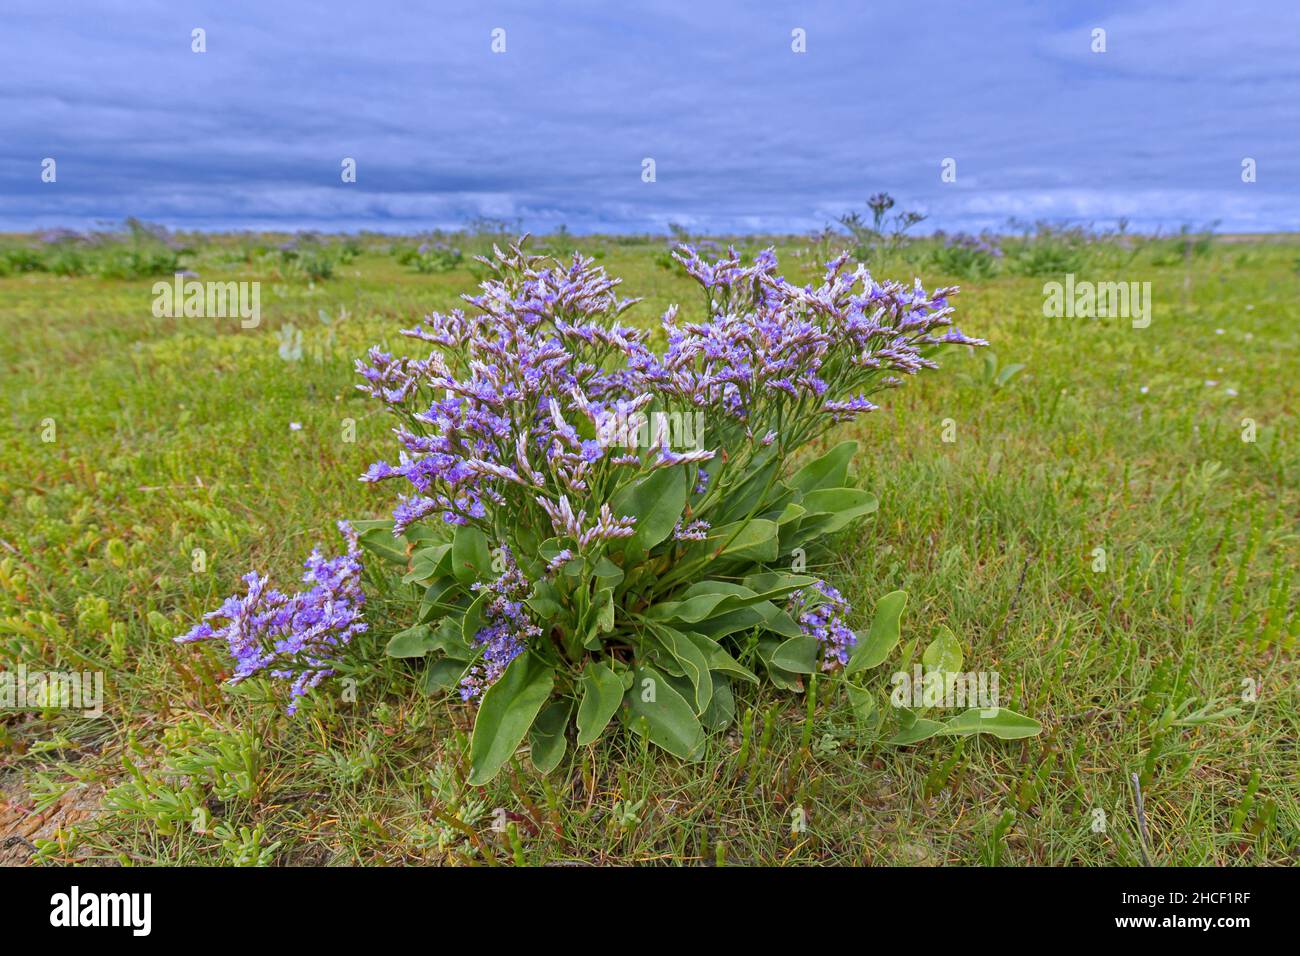 Common sea-lavender (Limonium vulgare) halophyte flower in salt marsh / saltmarsh in summer Stock Photo